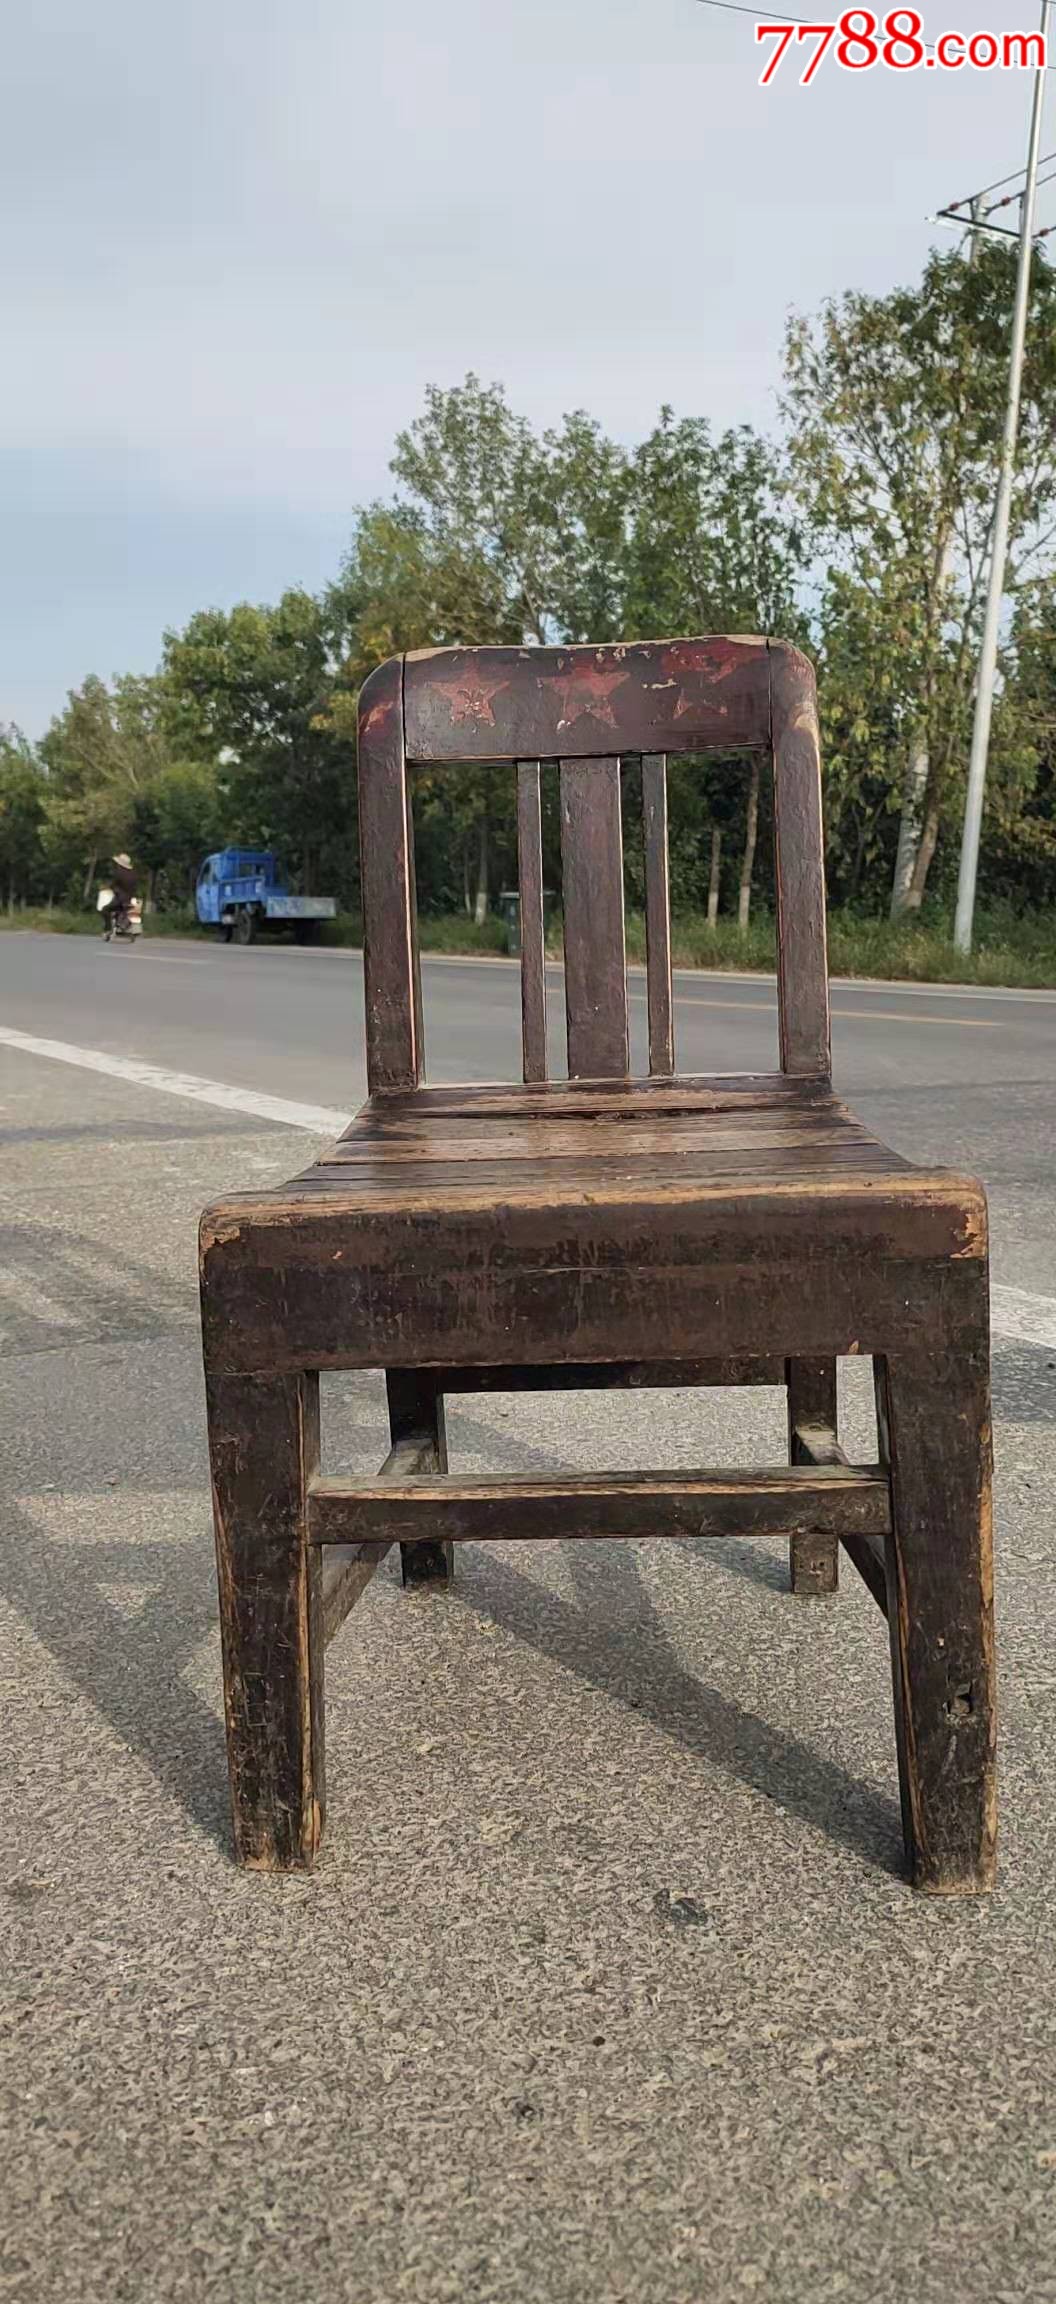 乡下收的民国小椅子完整无修正常使用包老